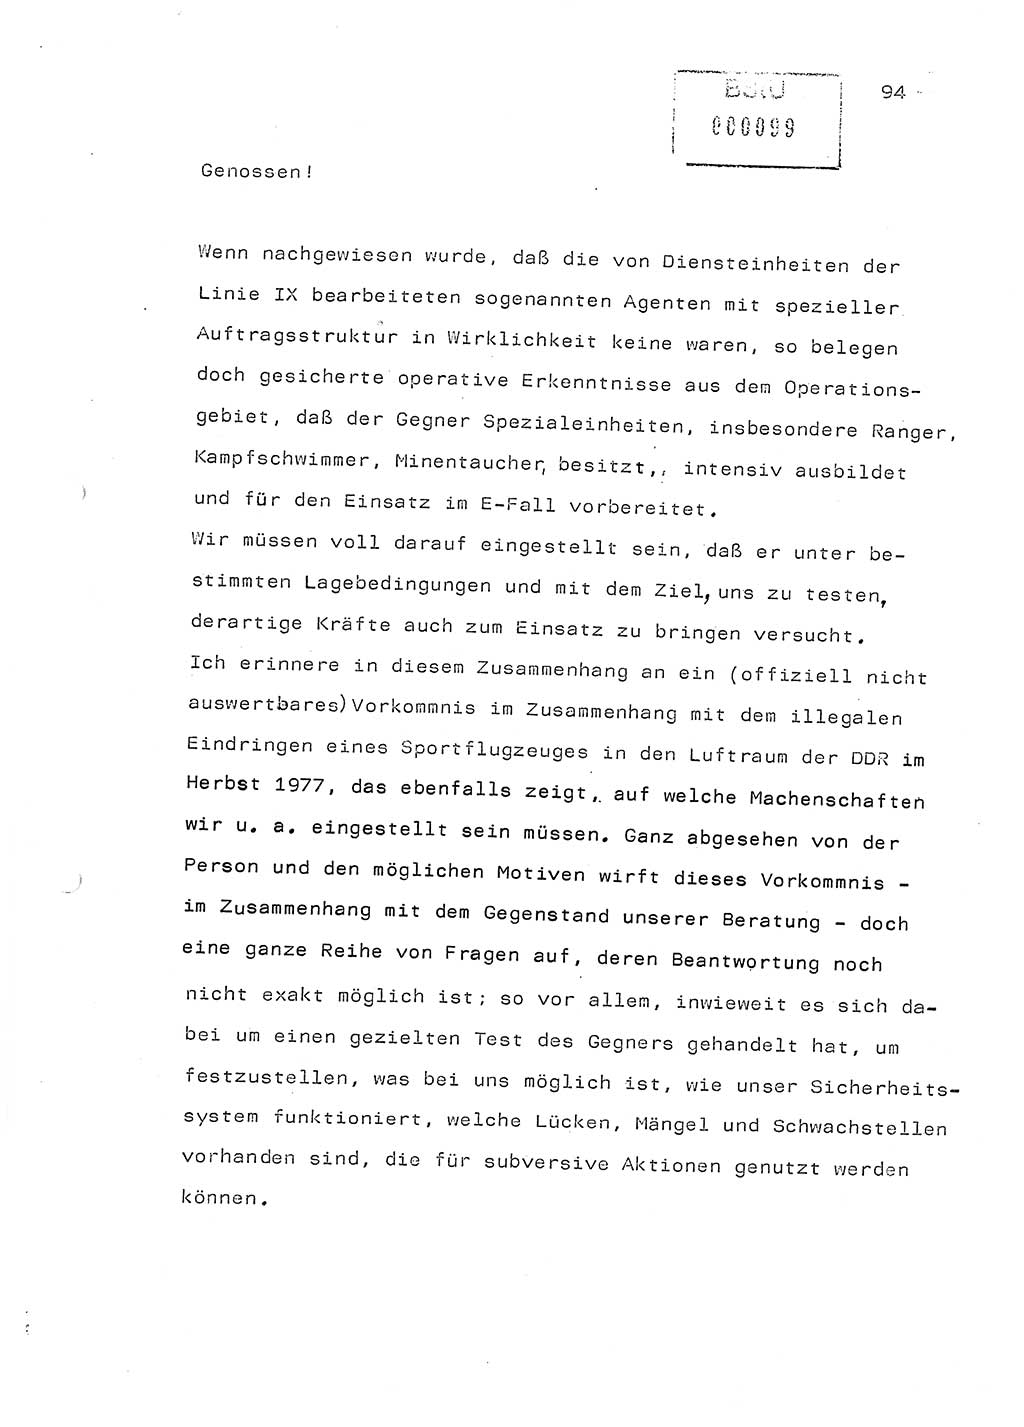 Referat (Generaloberst Erich Mielke) auf der Zentralen Dienstkonferenz am 24.5.1979 [Ministerium für Staatssicherheit (MfS), Deutsche Demokratische Republik (DDR), Der Minister], Berlin 1979, Seite 94 (Ref. DK DDR MfS Min. /79 1979, S. 94)